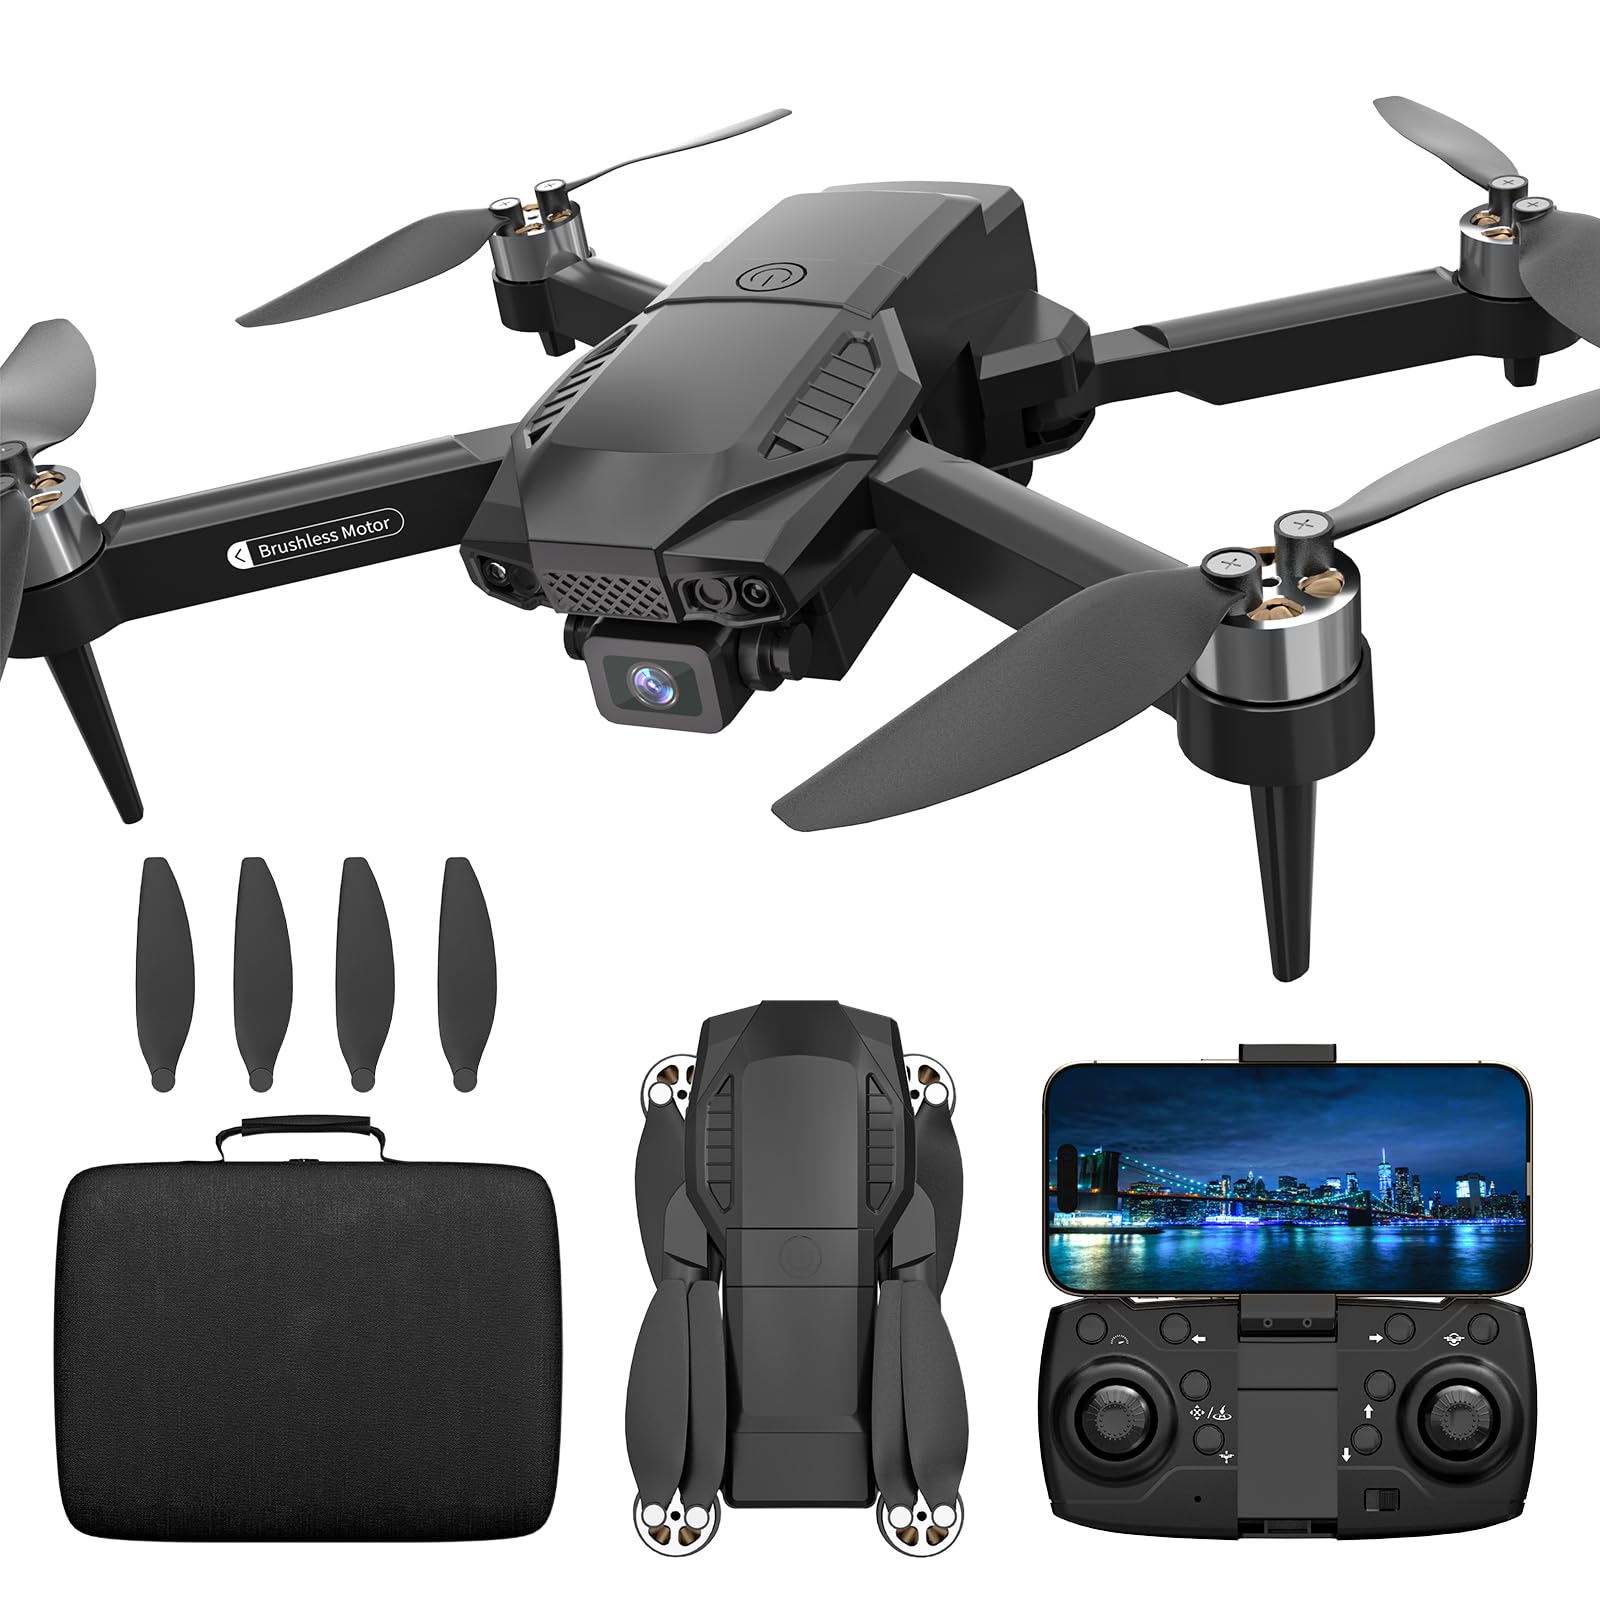 F198 Drohne mit Kamera 720P für Kinder,90° Adjust Lens AIdrone APP FPV,Bürstenloser Motor Drone mit WiFi Übertragung, Schwerkraft Sensor,3D Flip,One Taste Ruckkehr, Headless Mode,Drohn lange flugzeit von karuisrc